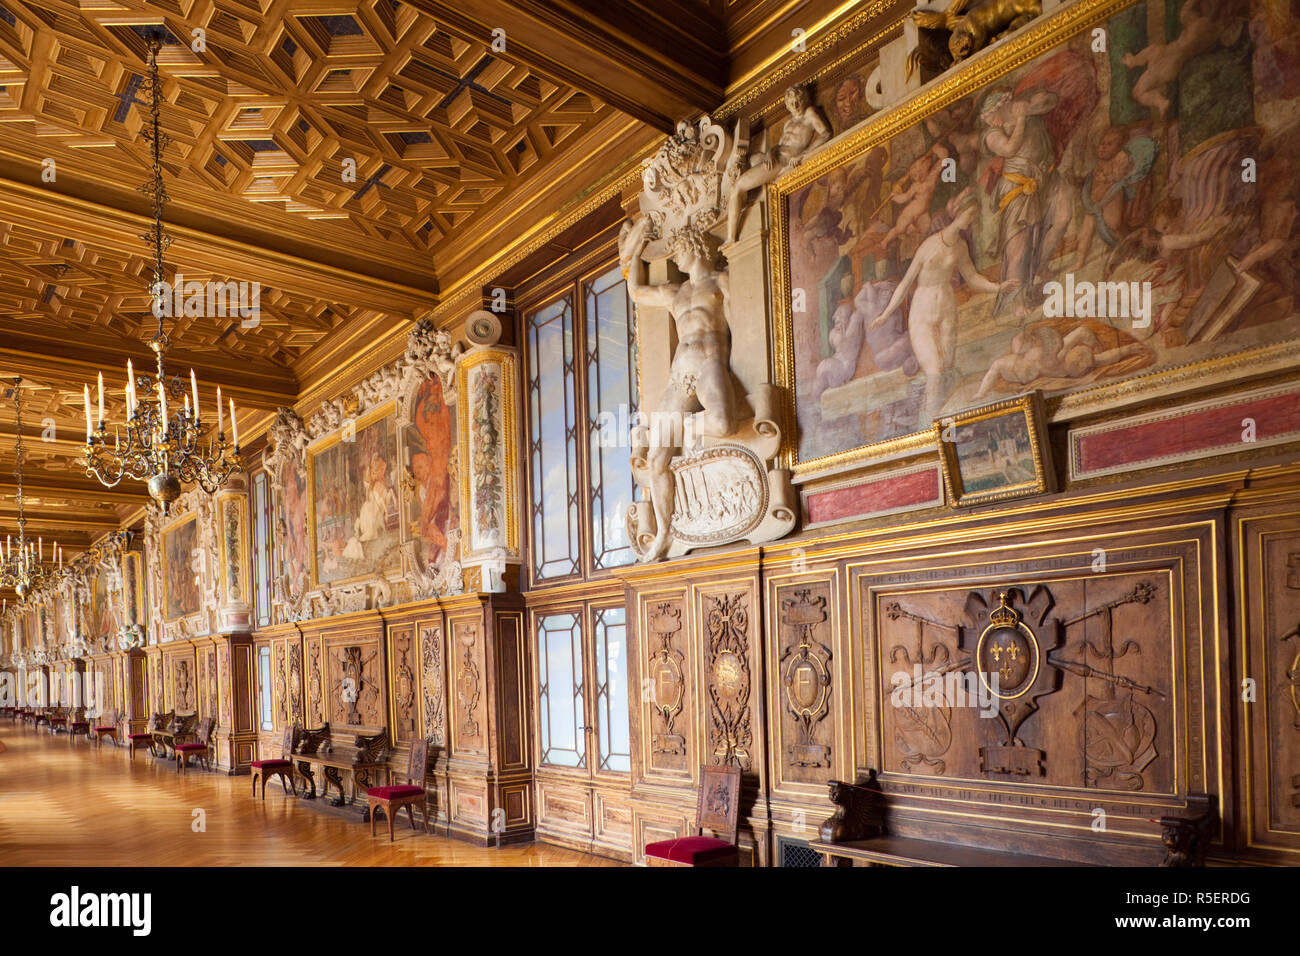 France, Ile-de-France, Fontainebleau, Chateau de Fontainebleau, Francois I Gallery Stock Photo